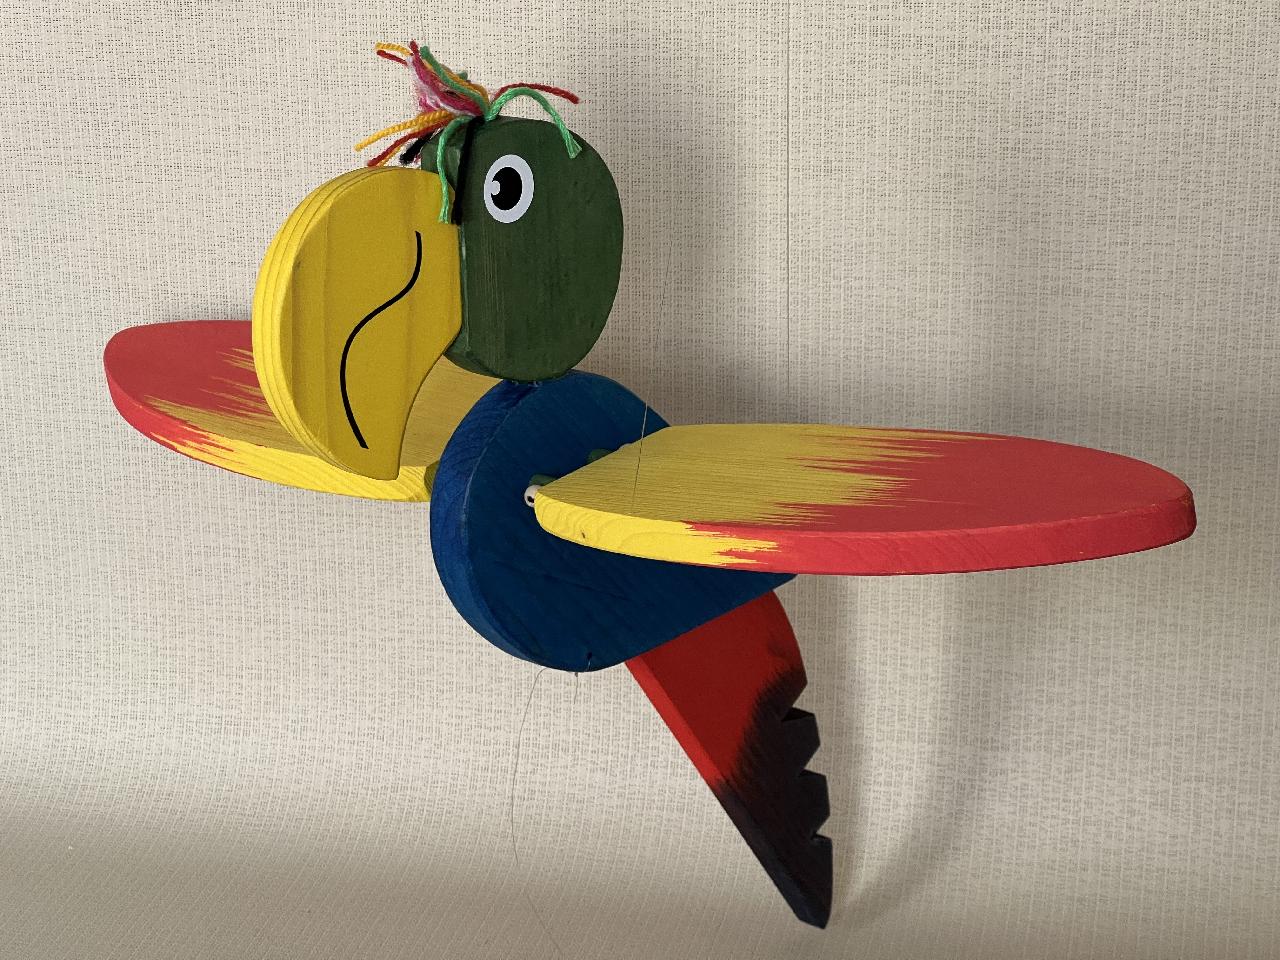 Dřevěný létající papoušek velký - modrý